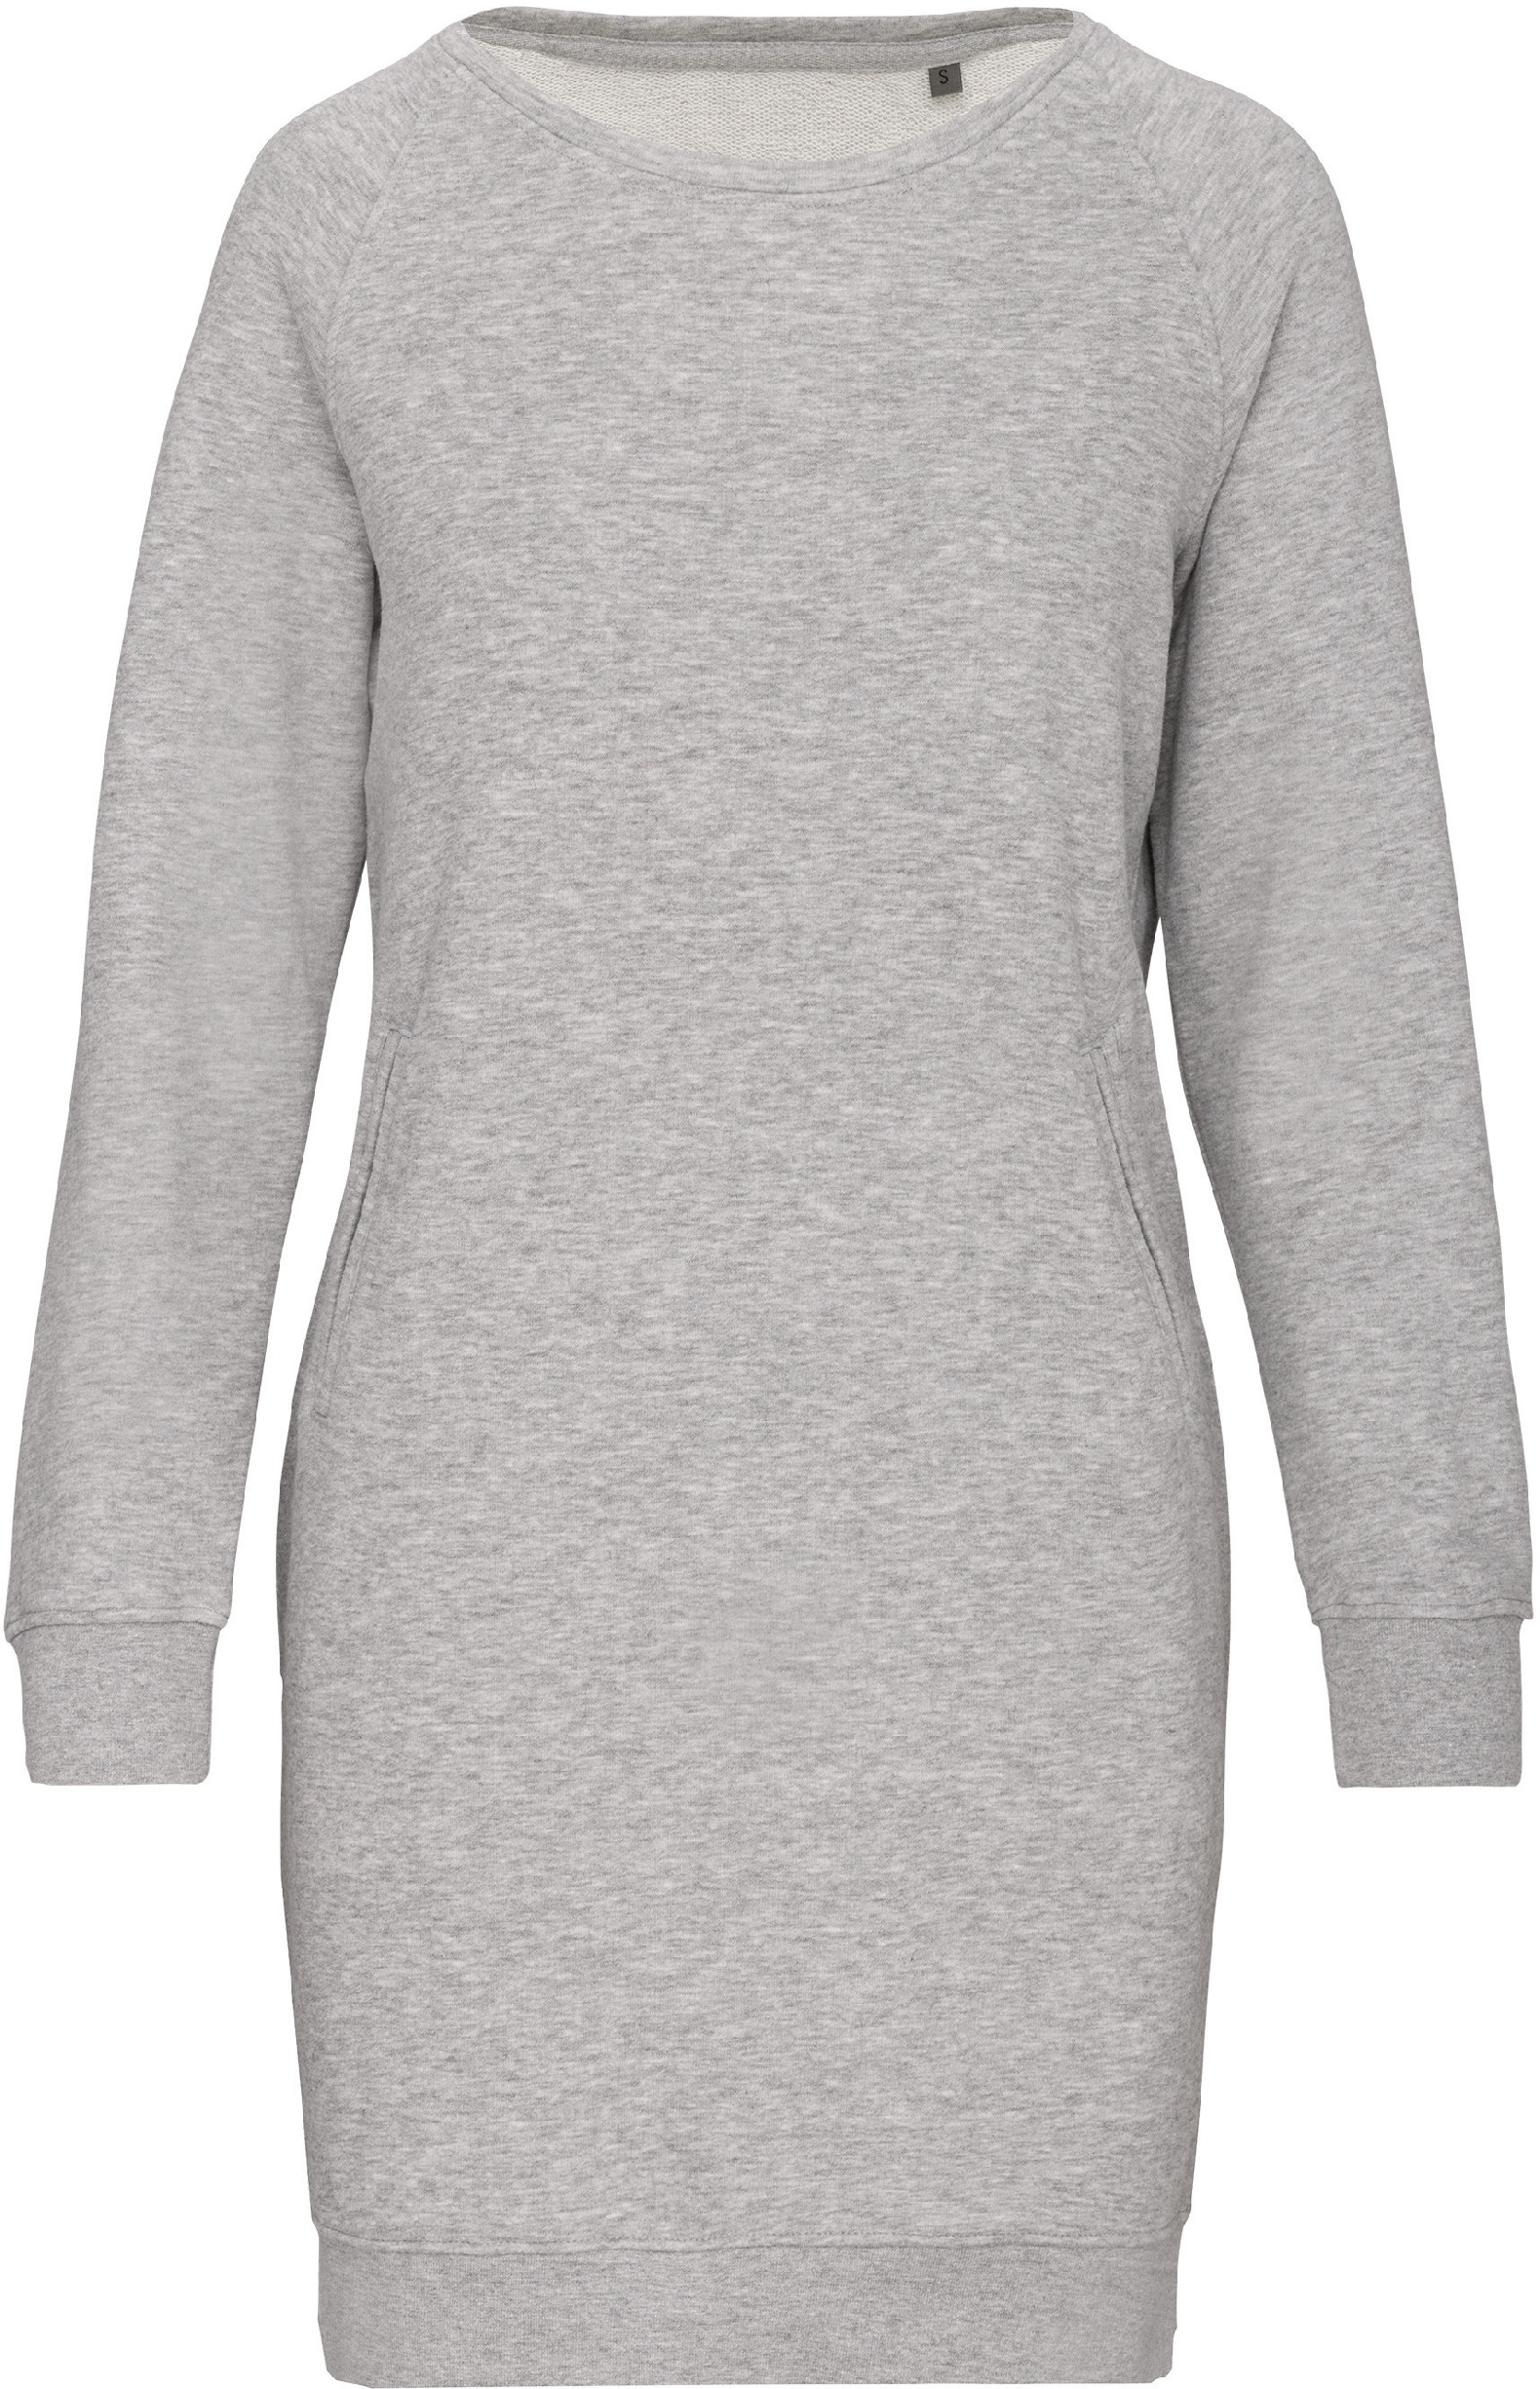 Organické teplákové šaty Barva: Light Grey Heather, Velikost: XS